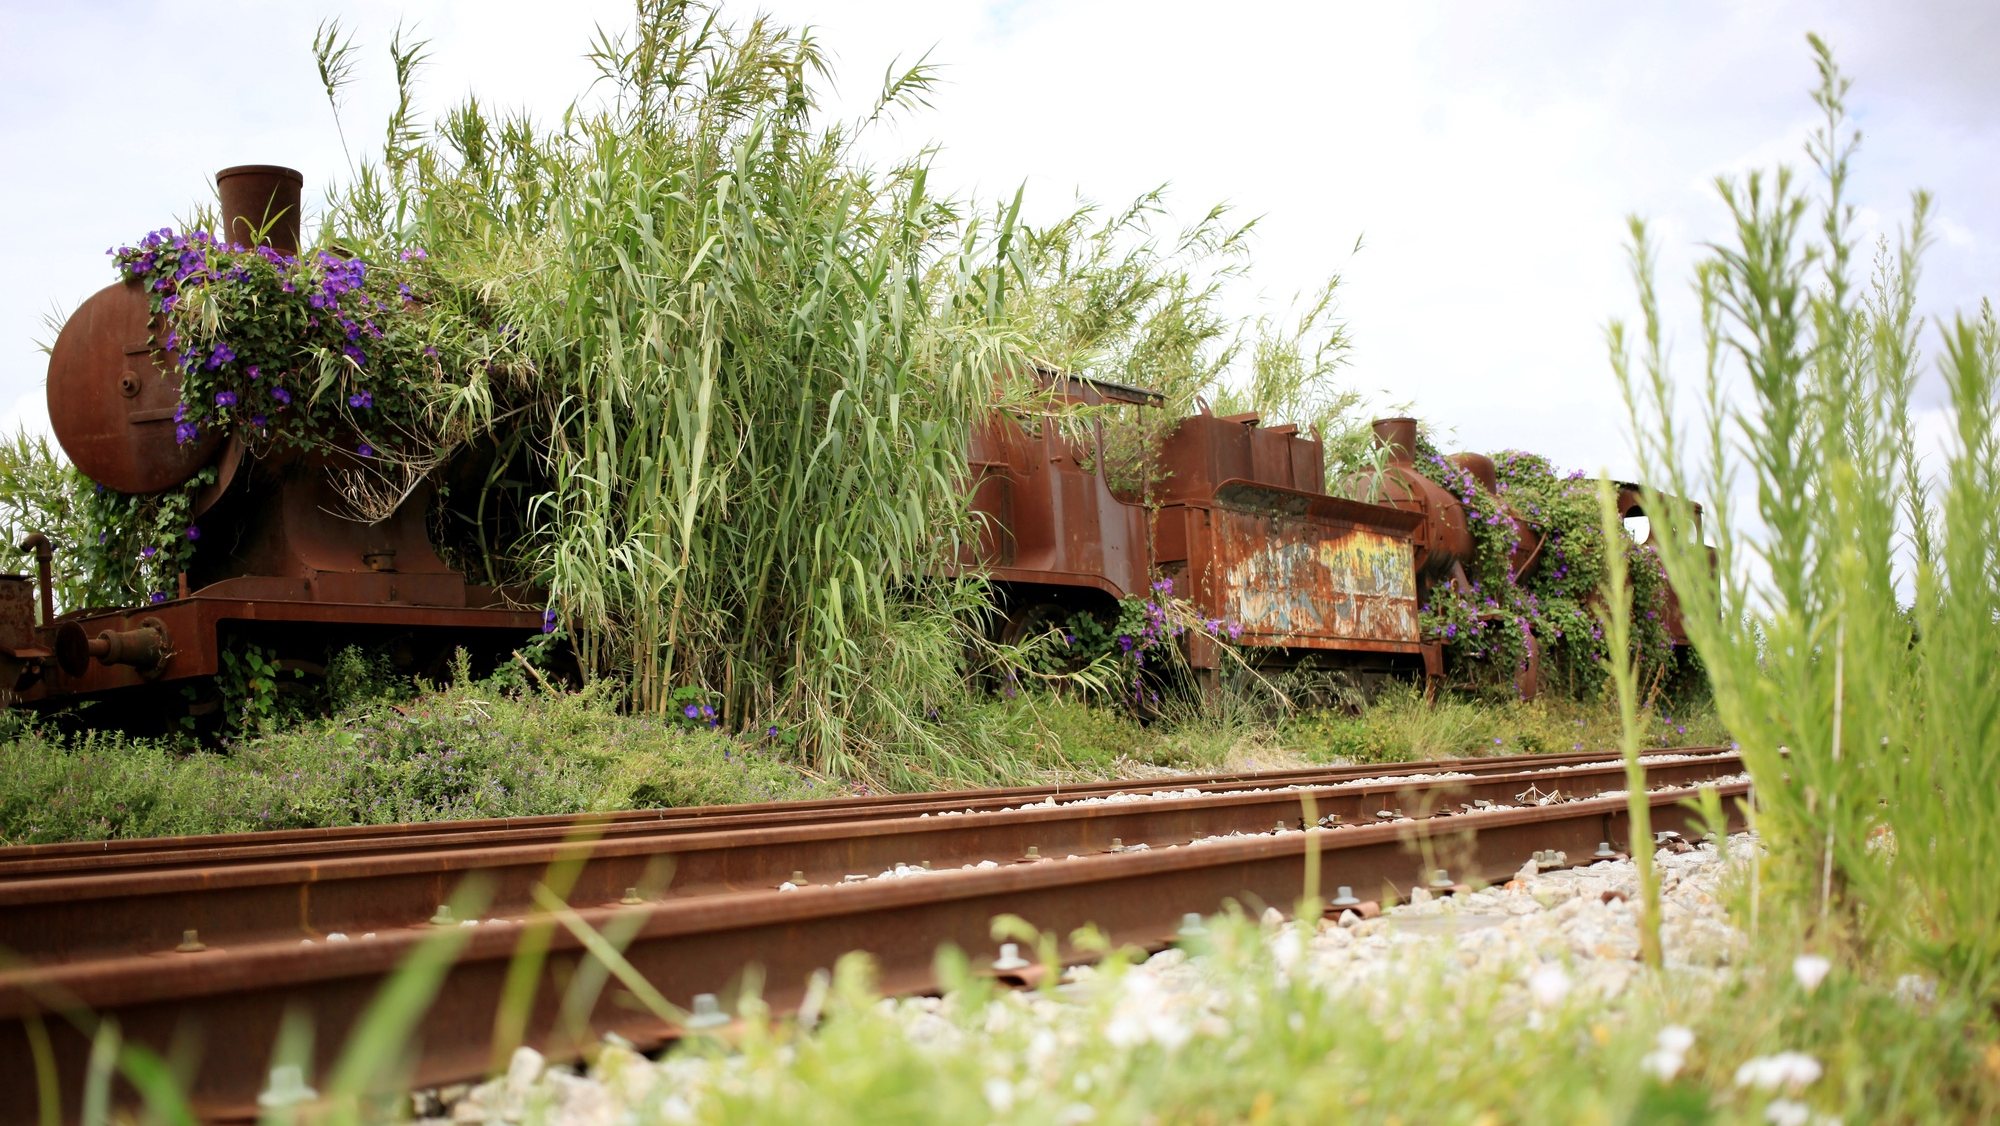 Locomotivas a vapor abandonadas há mais de 20 anos na estação das Devesas, em Gaia, continuam à espera da finalização do protocolo com a CP que as levará para o Museu Nacional Ferroviário, no Entroncamento, 07 de julho de 2014, Vila Nova de Gaia. (ACOMPANHA TEXTO). ESTELA SILVA/LUSA